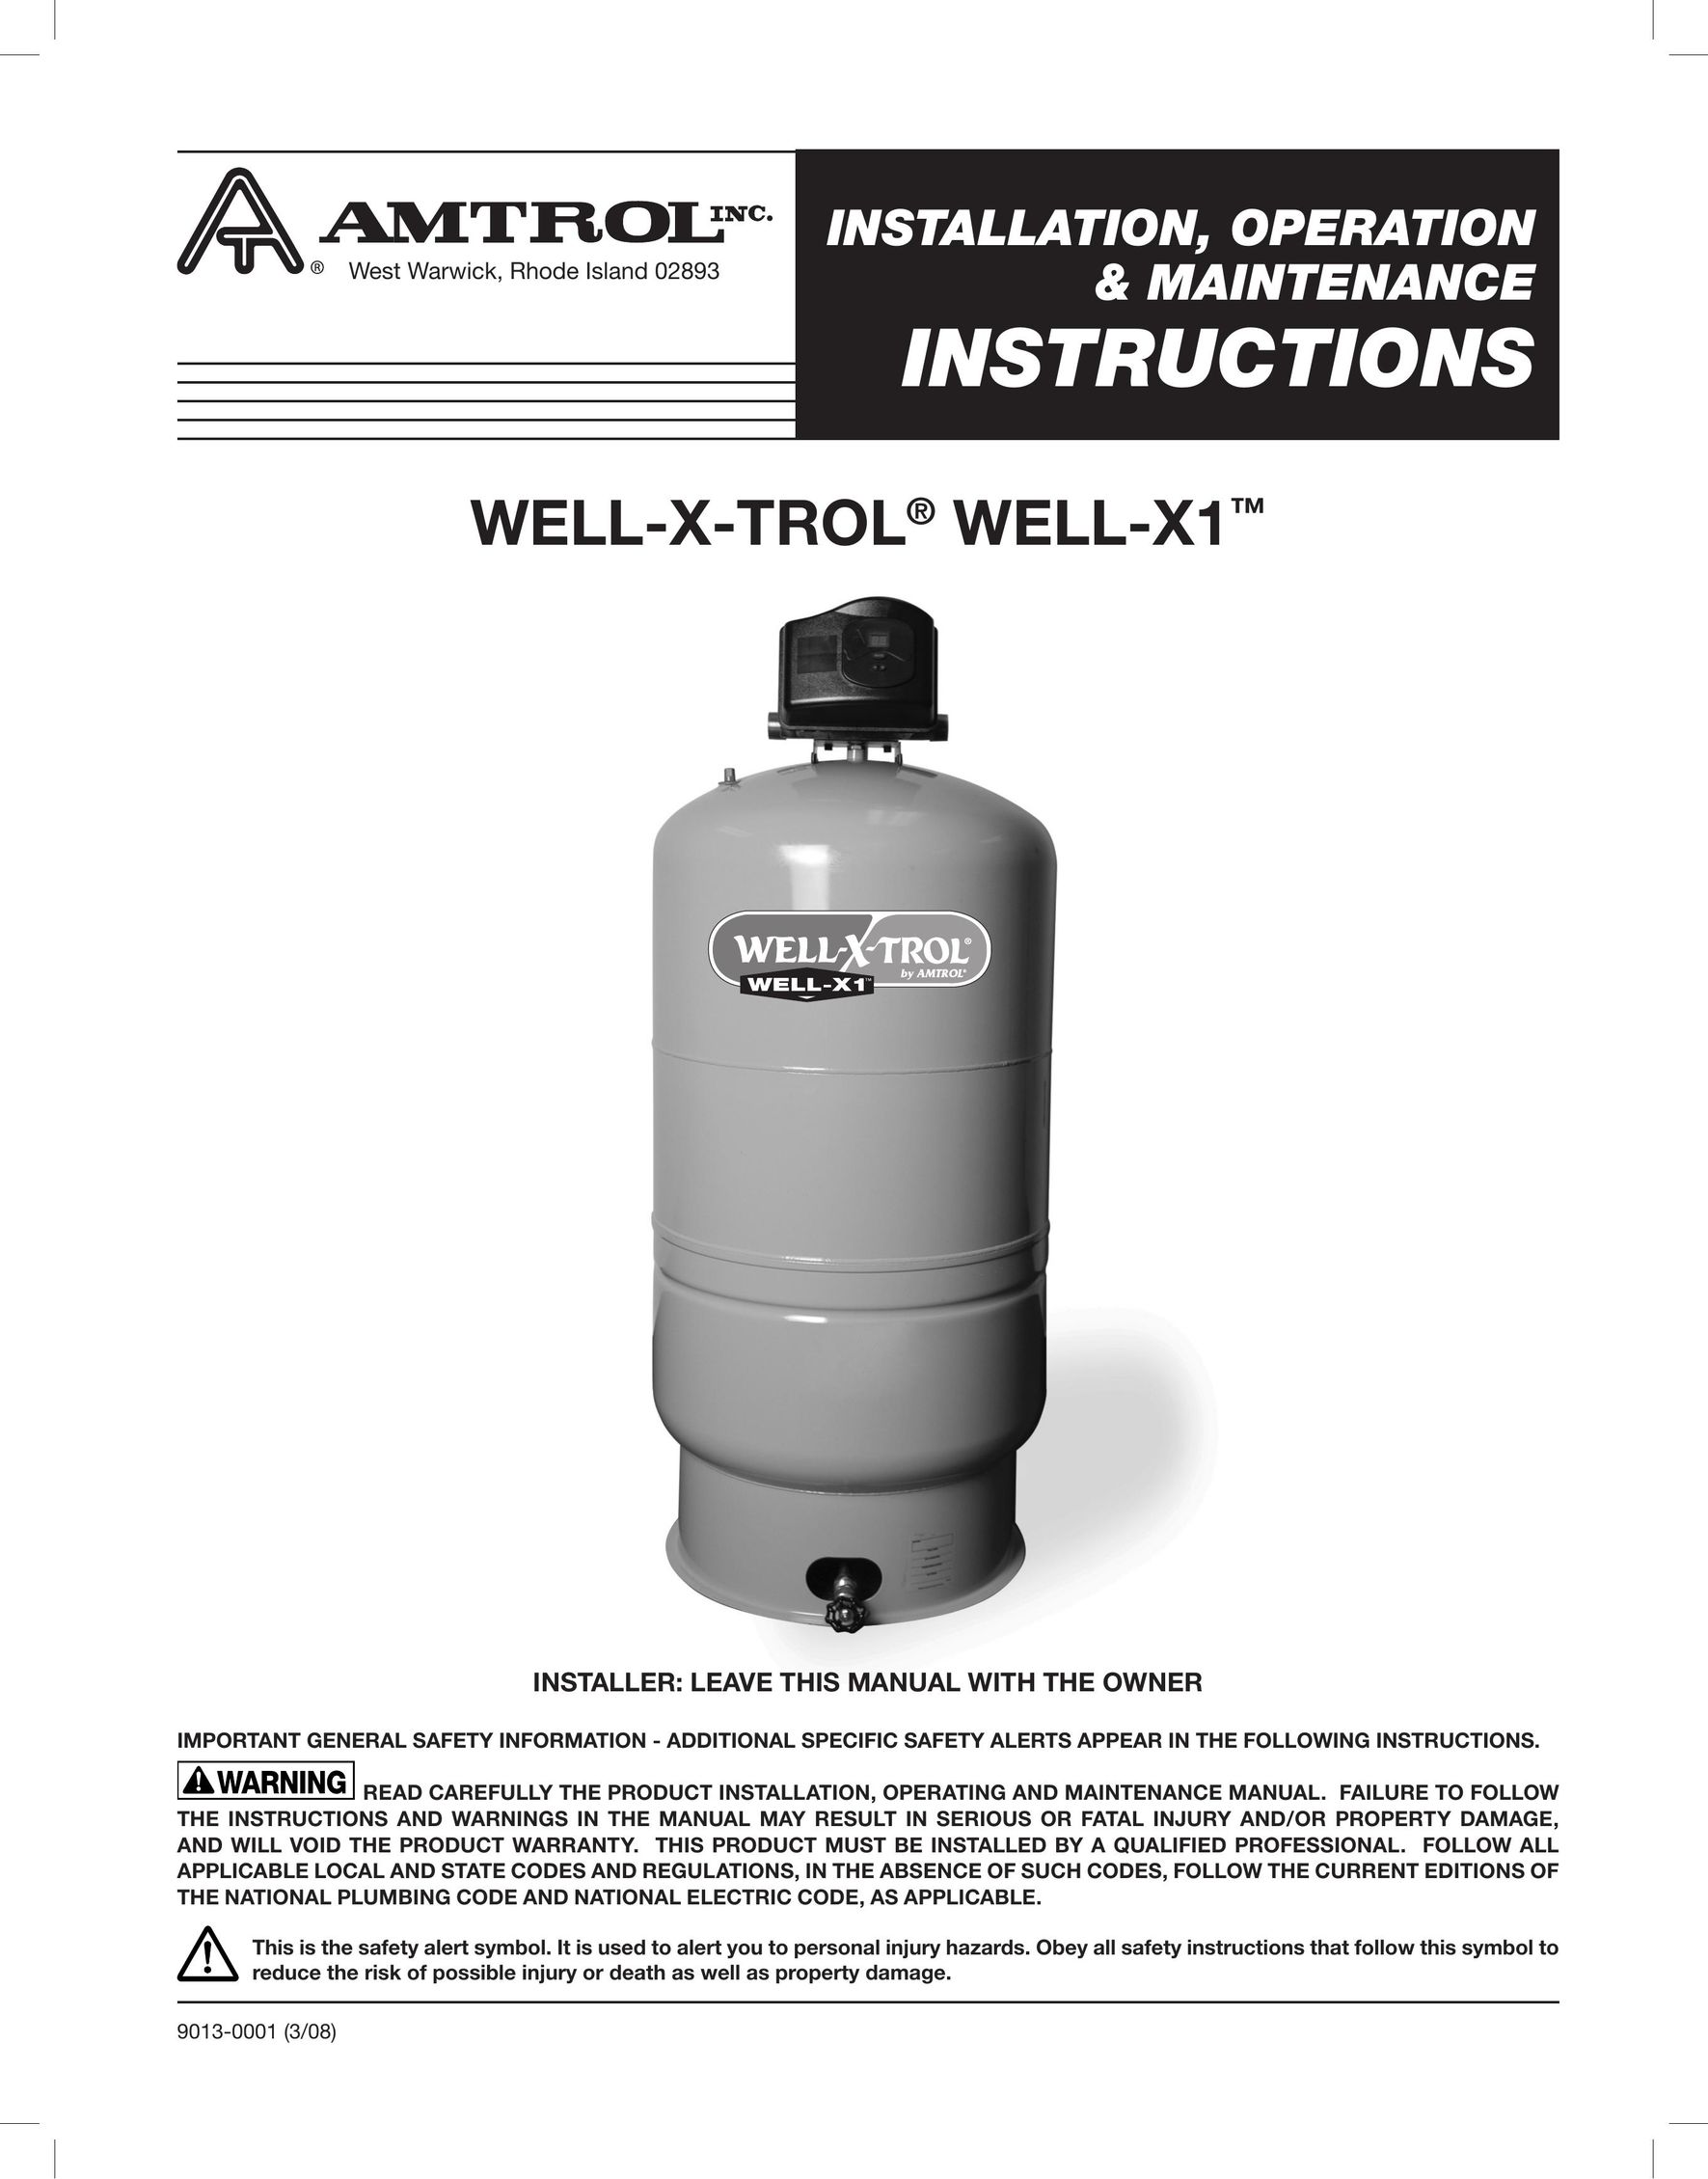 Amtrol WELL-X-TROL Water System User Manual